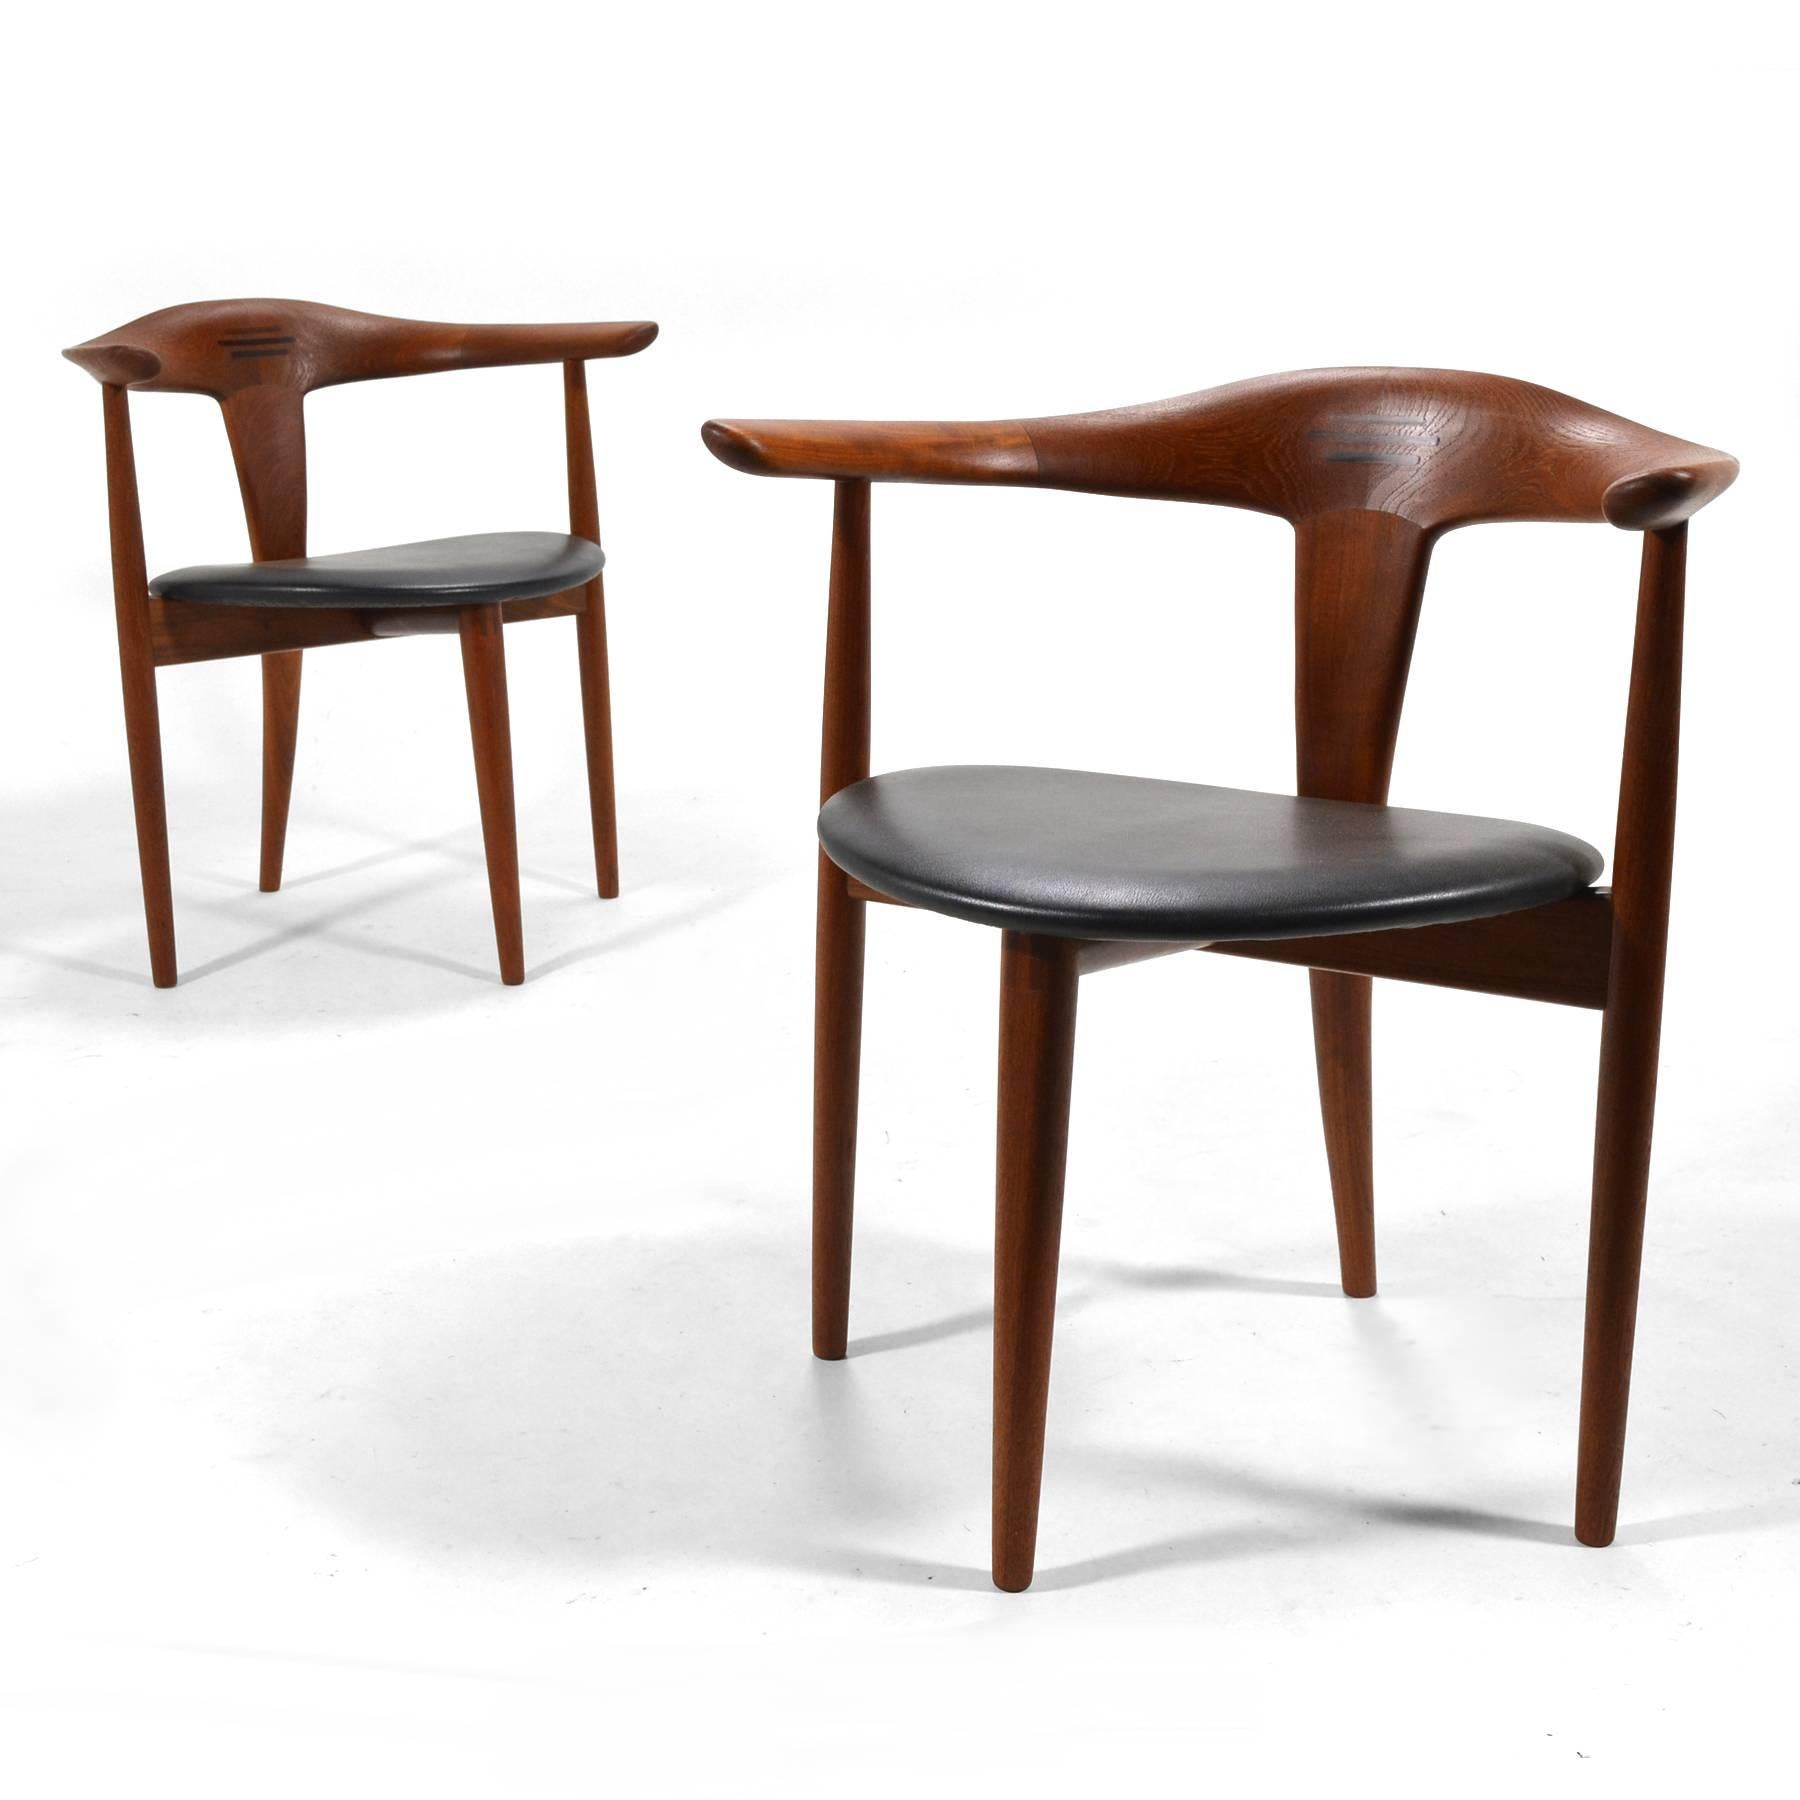 Cette paire de fauteuils en teck a été conçue par Erik Andersen et Palle Pedersen et fabriquée par l'ébéniste Randers Møbelfabrik.